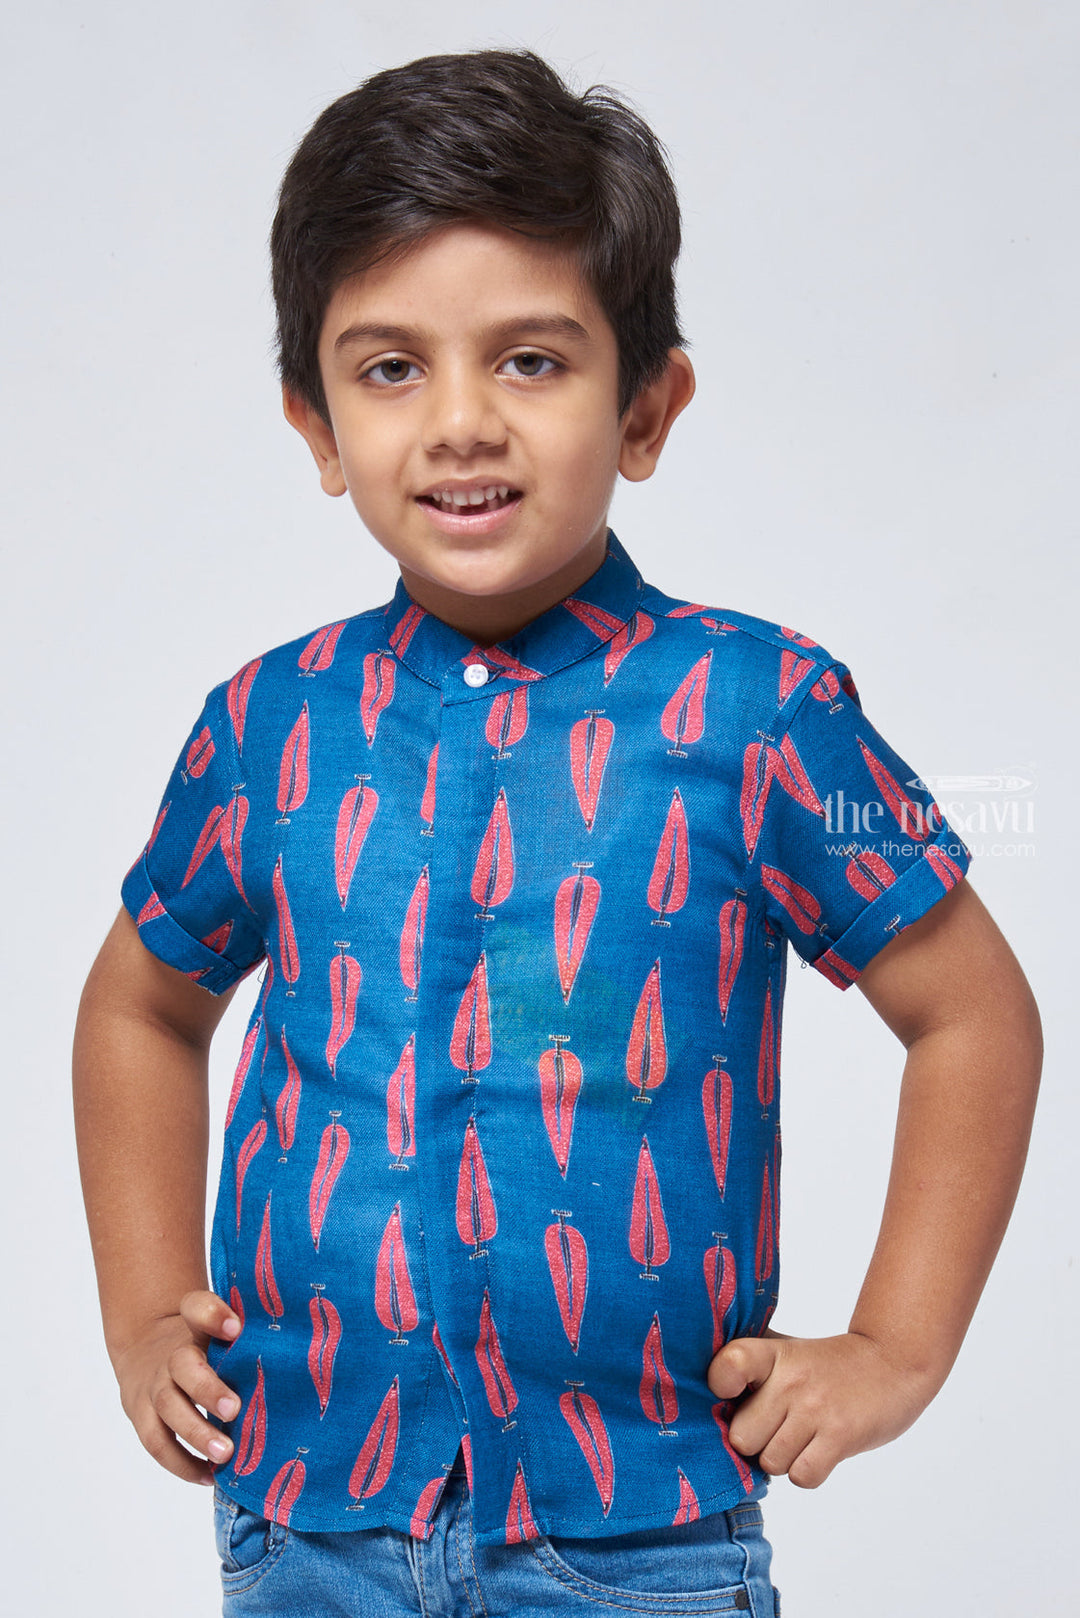 The Nesavu Boys Linen Shirt Traditional Ajrakh Hand Block Print Boys' Shirt: Add a Touch of India to Your Wardrobe Nesavu 14 (6M) / Blue / Linen BS057-14 Hand Block Printed Shirt for Boys | Boys Premium Shirt | The Nesavu